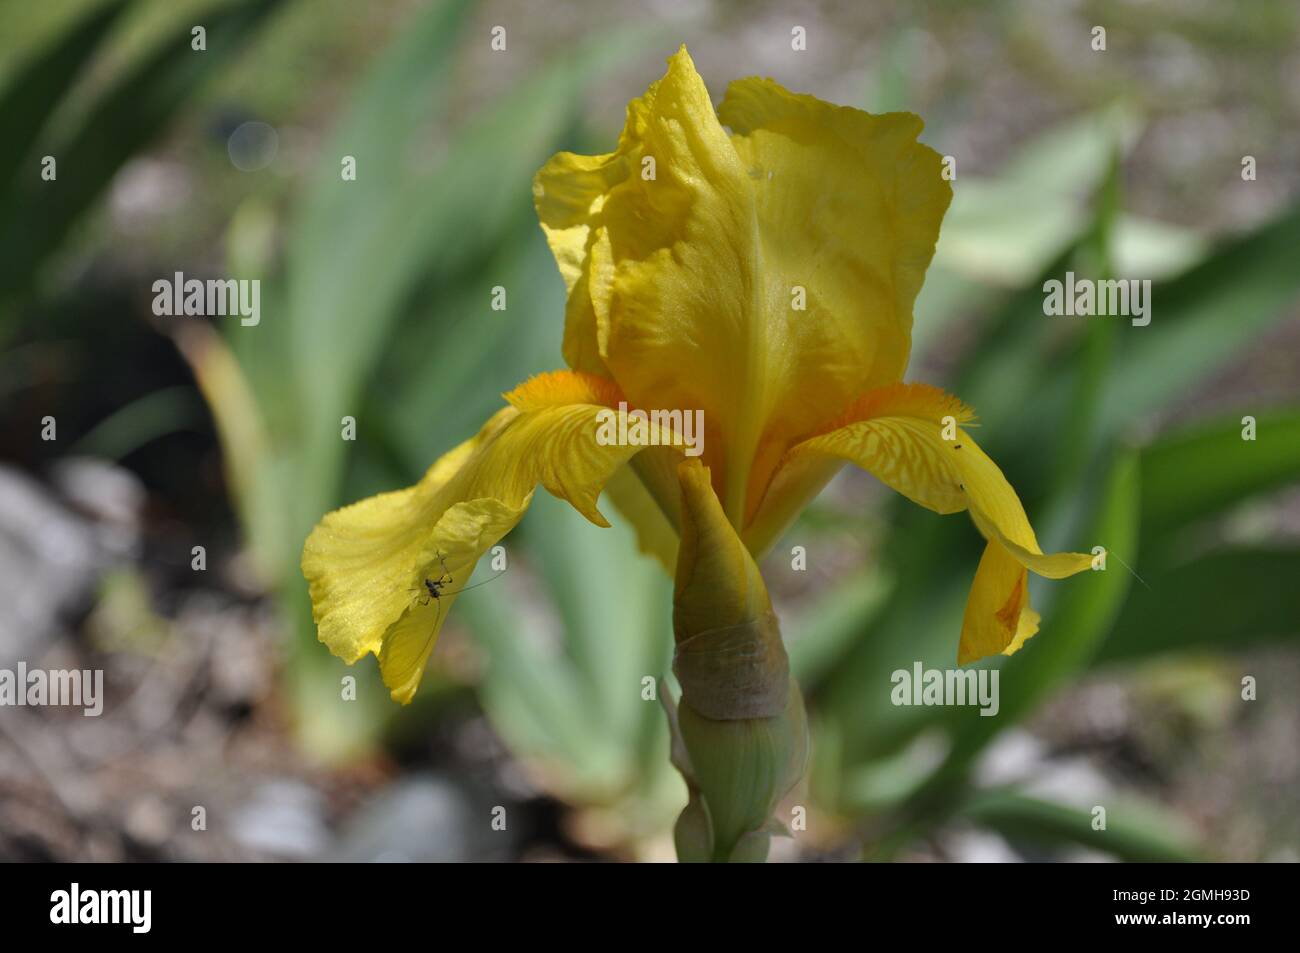 Iride in fiore arancione e giallo con sfondo verde Foto Stock